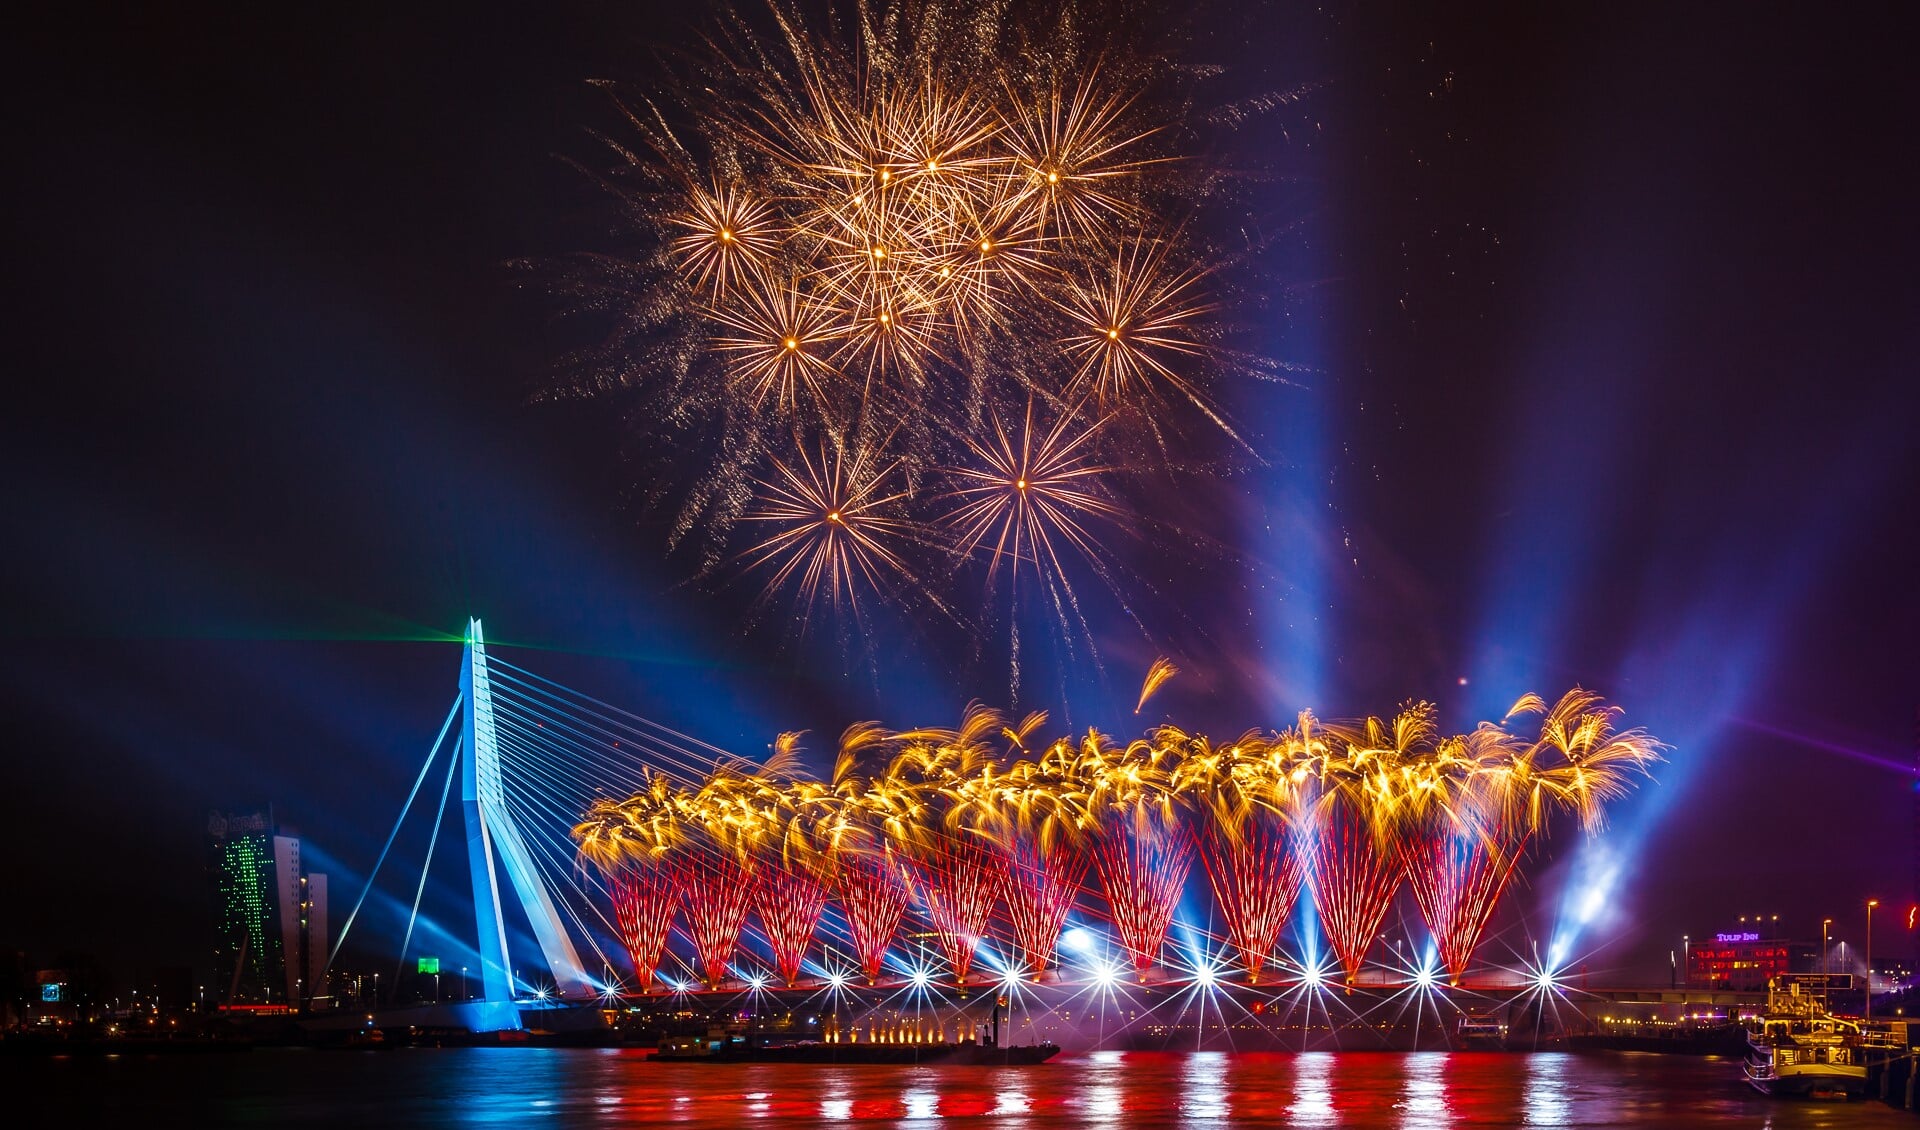 De grootste vuurwerkshow van Nederland is op 31 december te zien bij de Erasmusbrug in Rotterdam. 